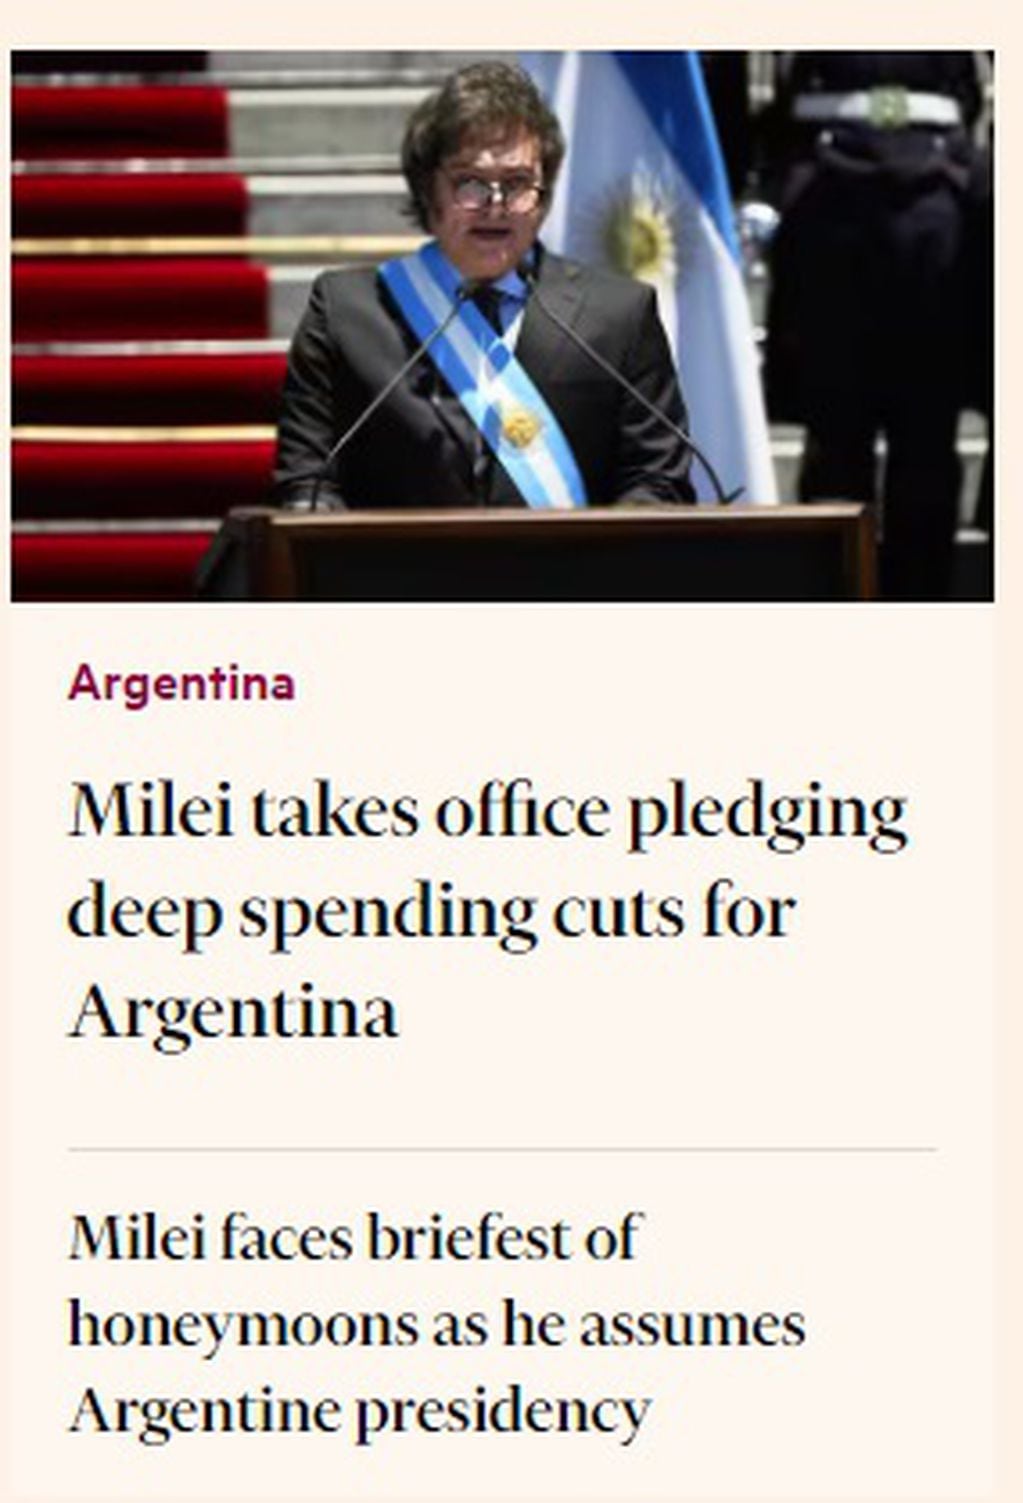 La asunción presidencial de Javier Milei en el Financial Times